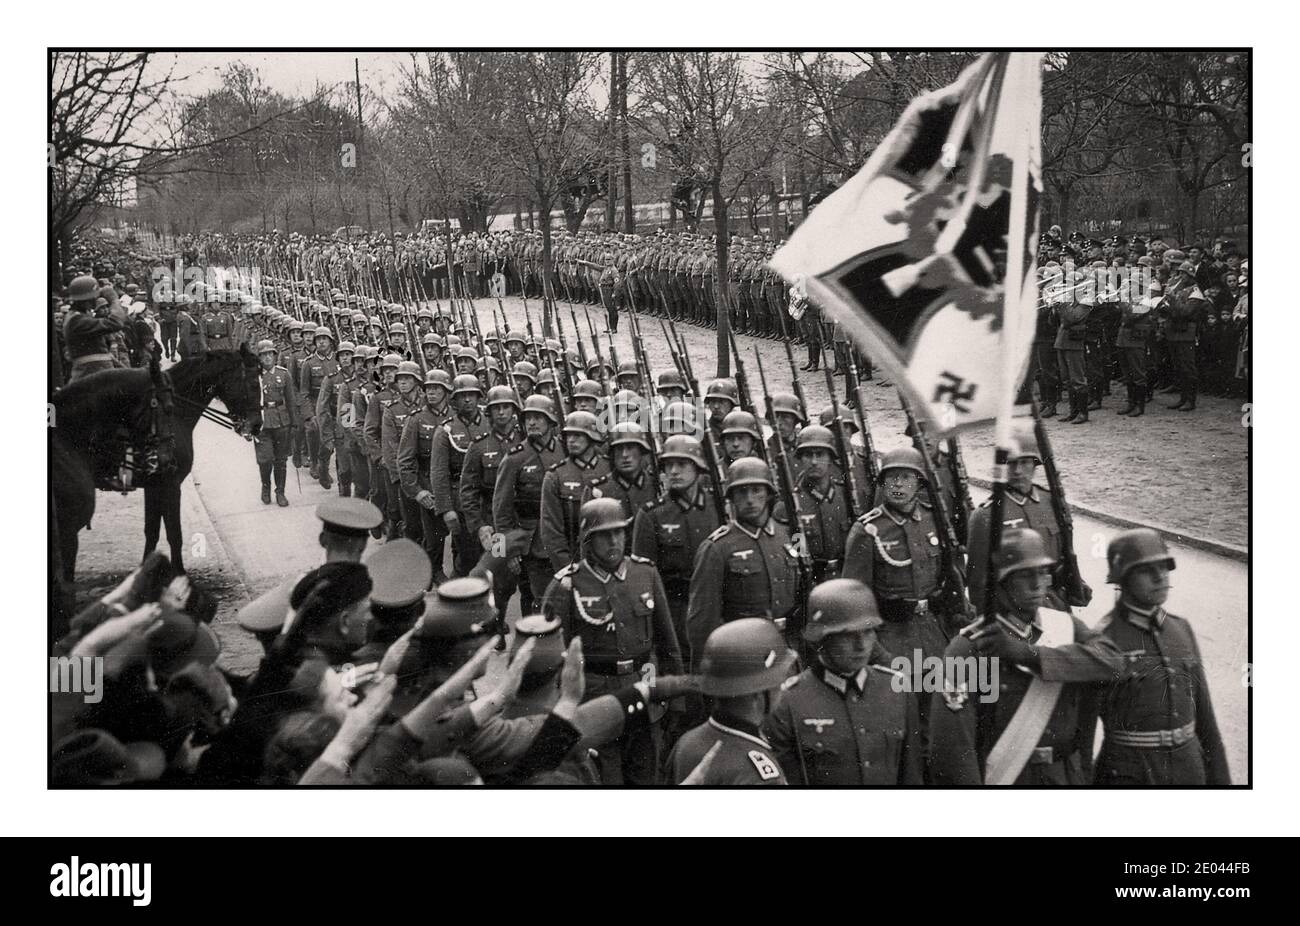 1940 Parade de de marche de l'Armée de Wehrmacht nazie, avec drapeau standard régimentaire devant. Le groupe militaire joue derrière. Les spectateurs saluant Heil Hitler en premier plan. Banque D'Images